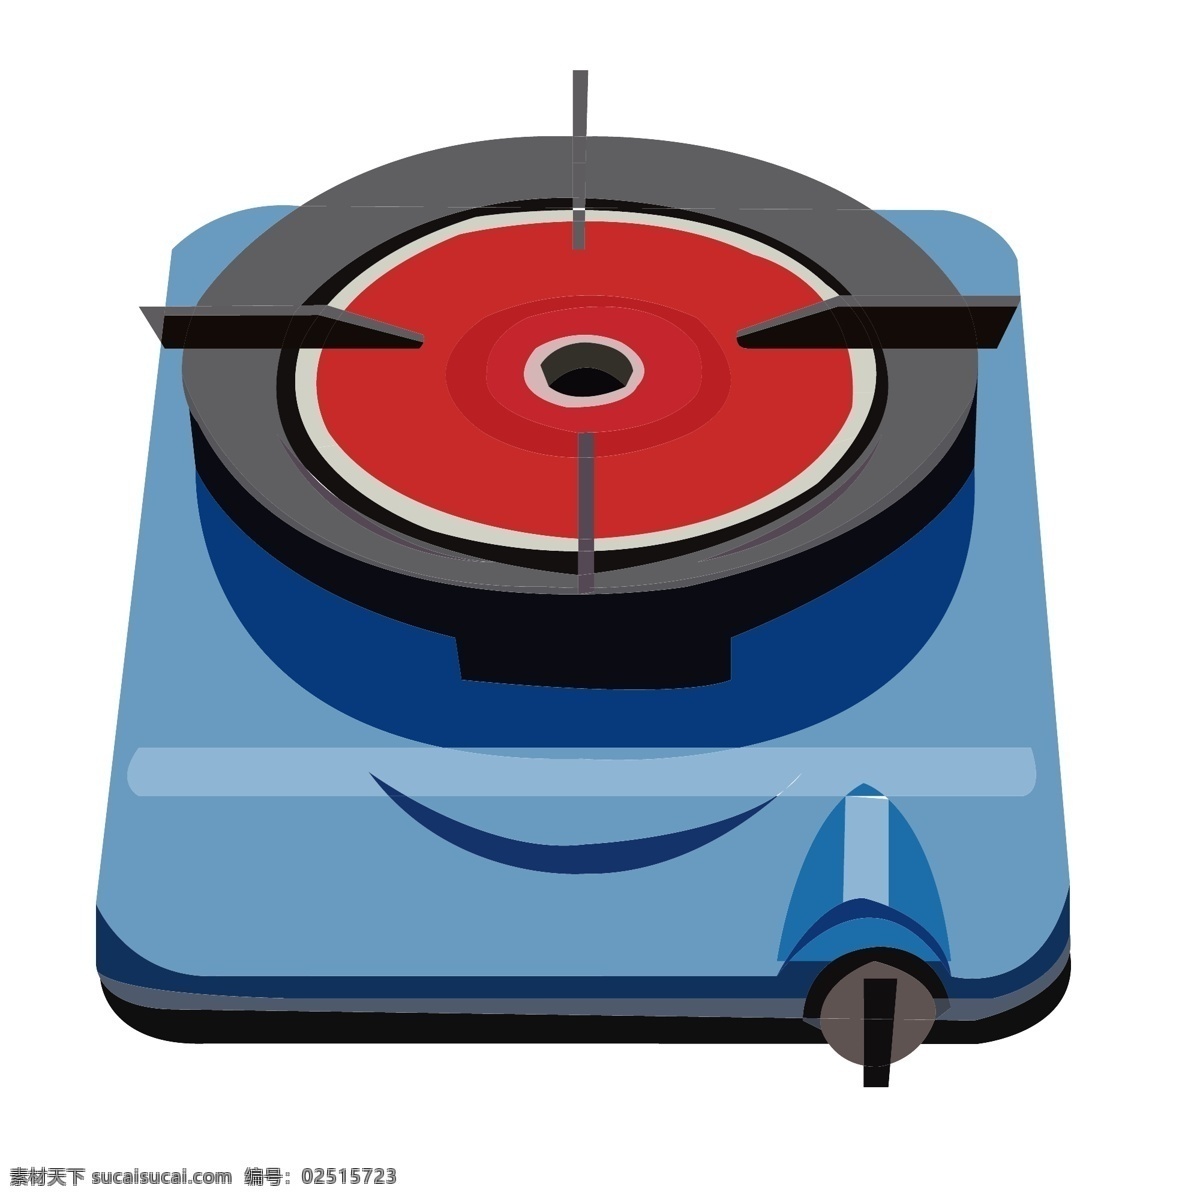 厨具 燃气灶 插画 蓝色的燃气灶 卡通插画 厨具插画 厨房用品 锅造 做饭工具 燃气灶厨具